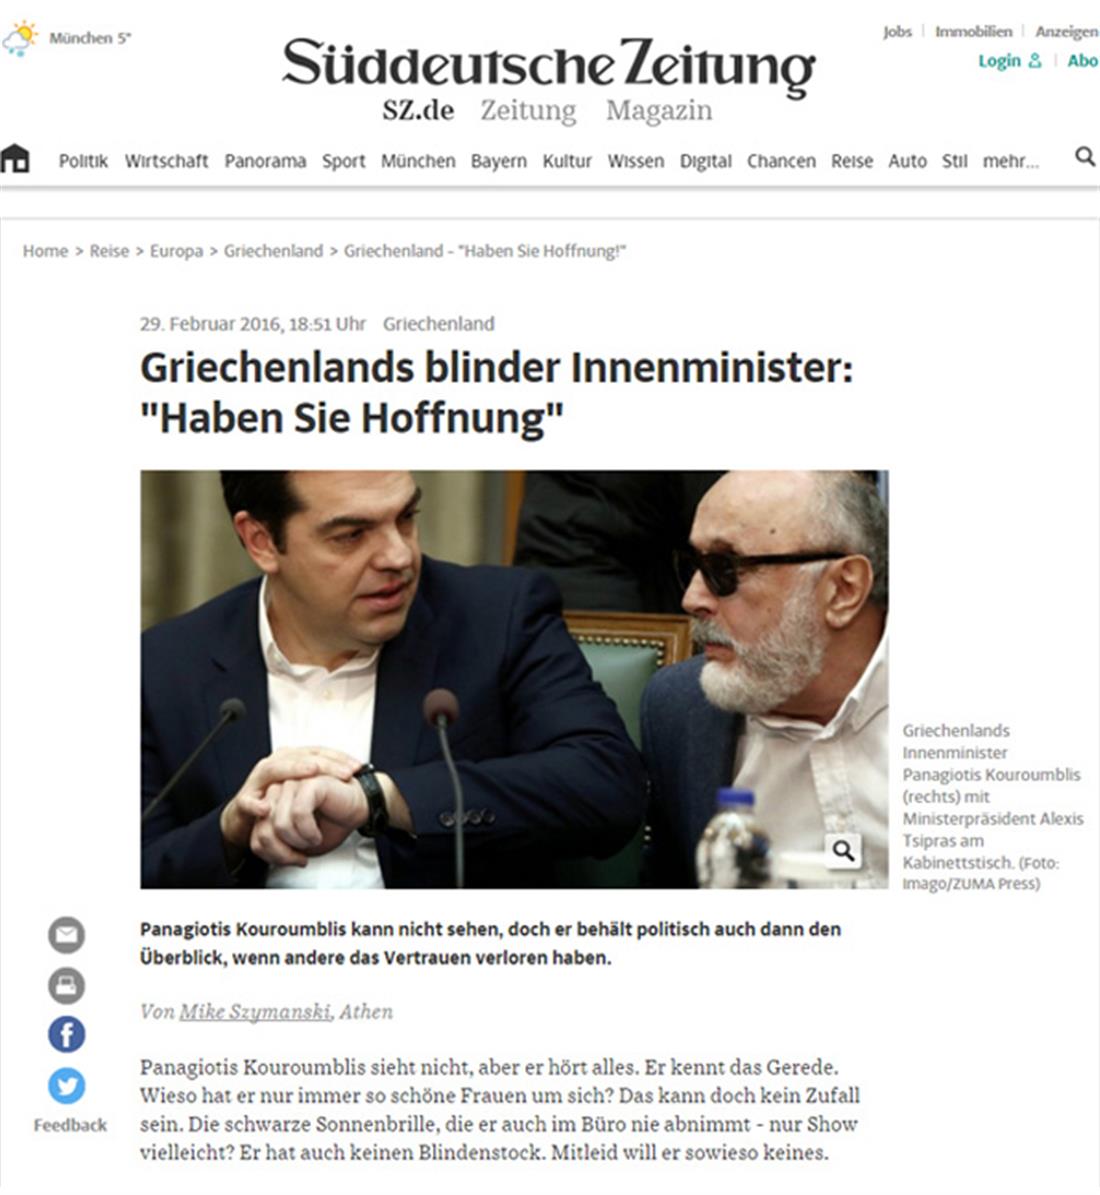 Κουρουμπλής - δήλωση - εφημερίδα - Suddeutsche Zeitung